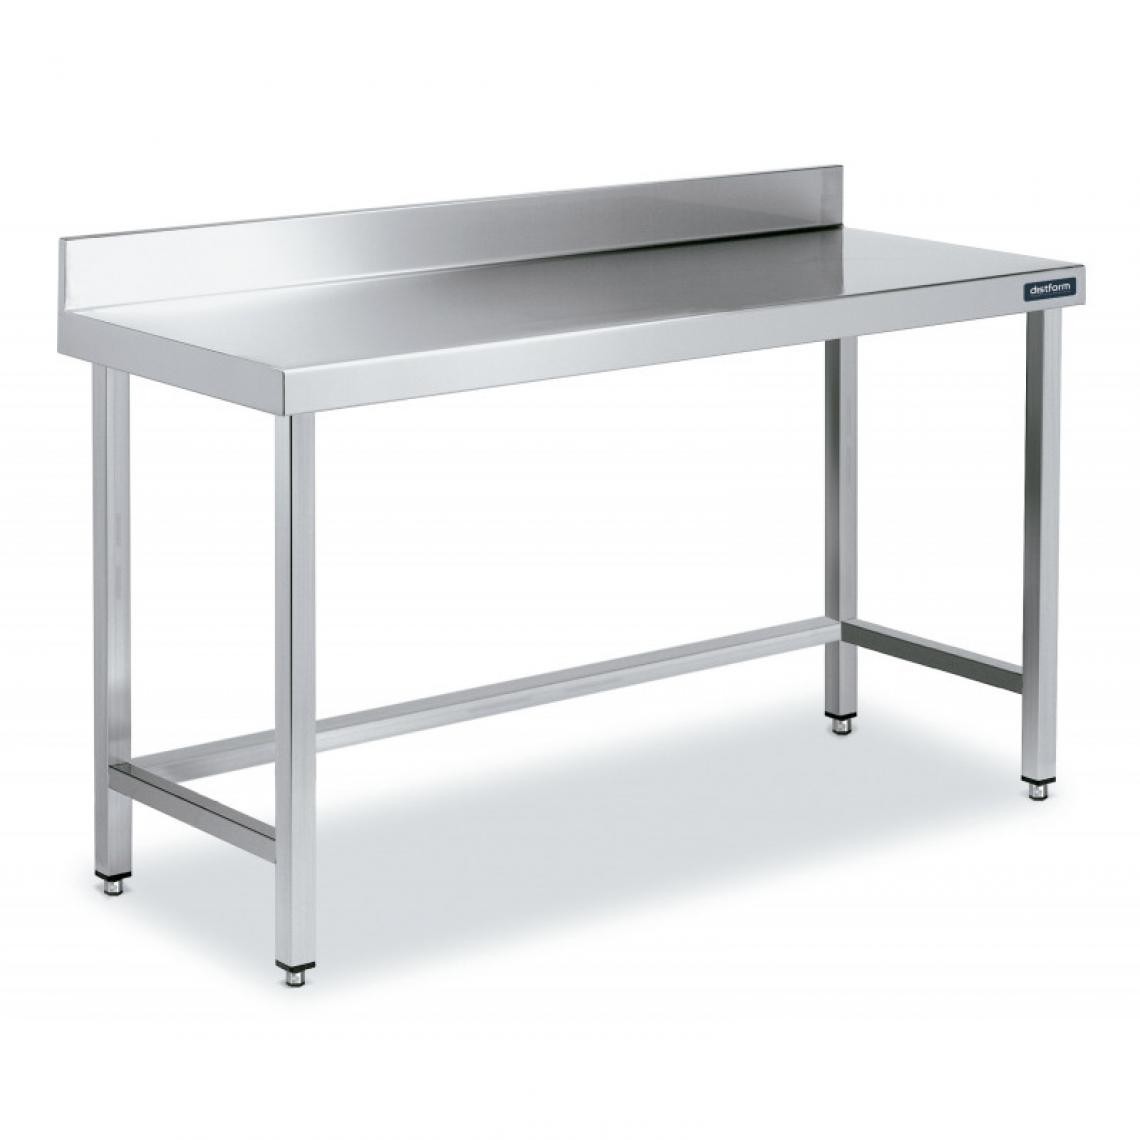 DISTFORM - Table Adossée en Inox avec Renforts Profondeur 700 mm - Distform - Acier inoxydable1000x700 - Tables à manger